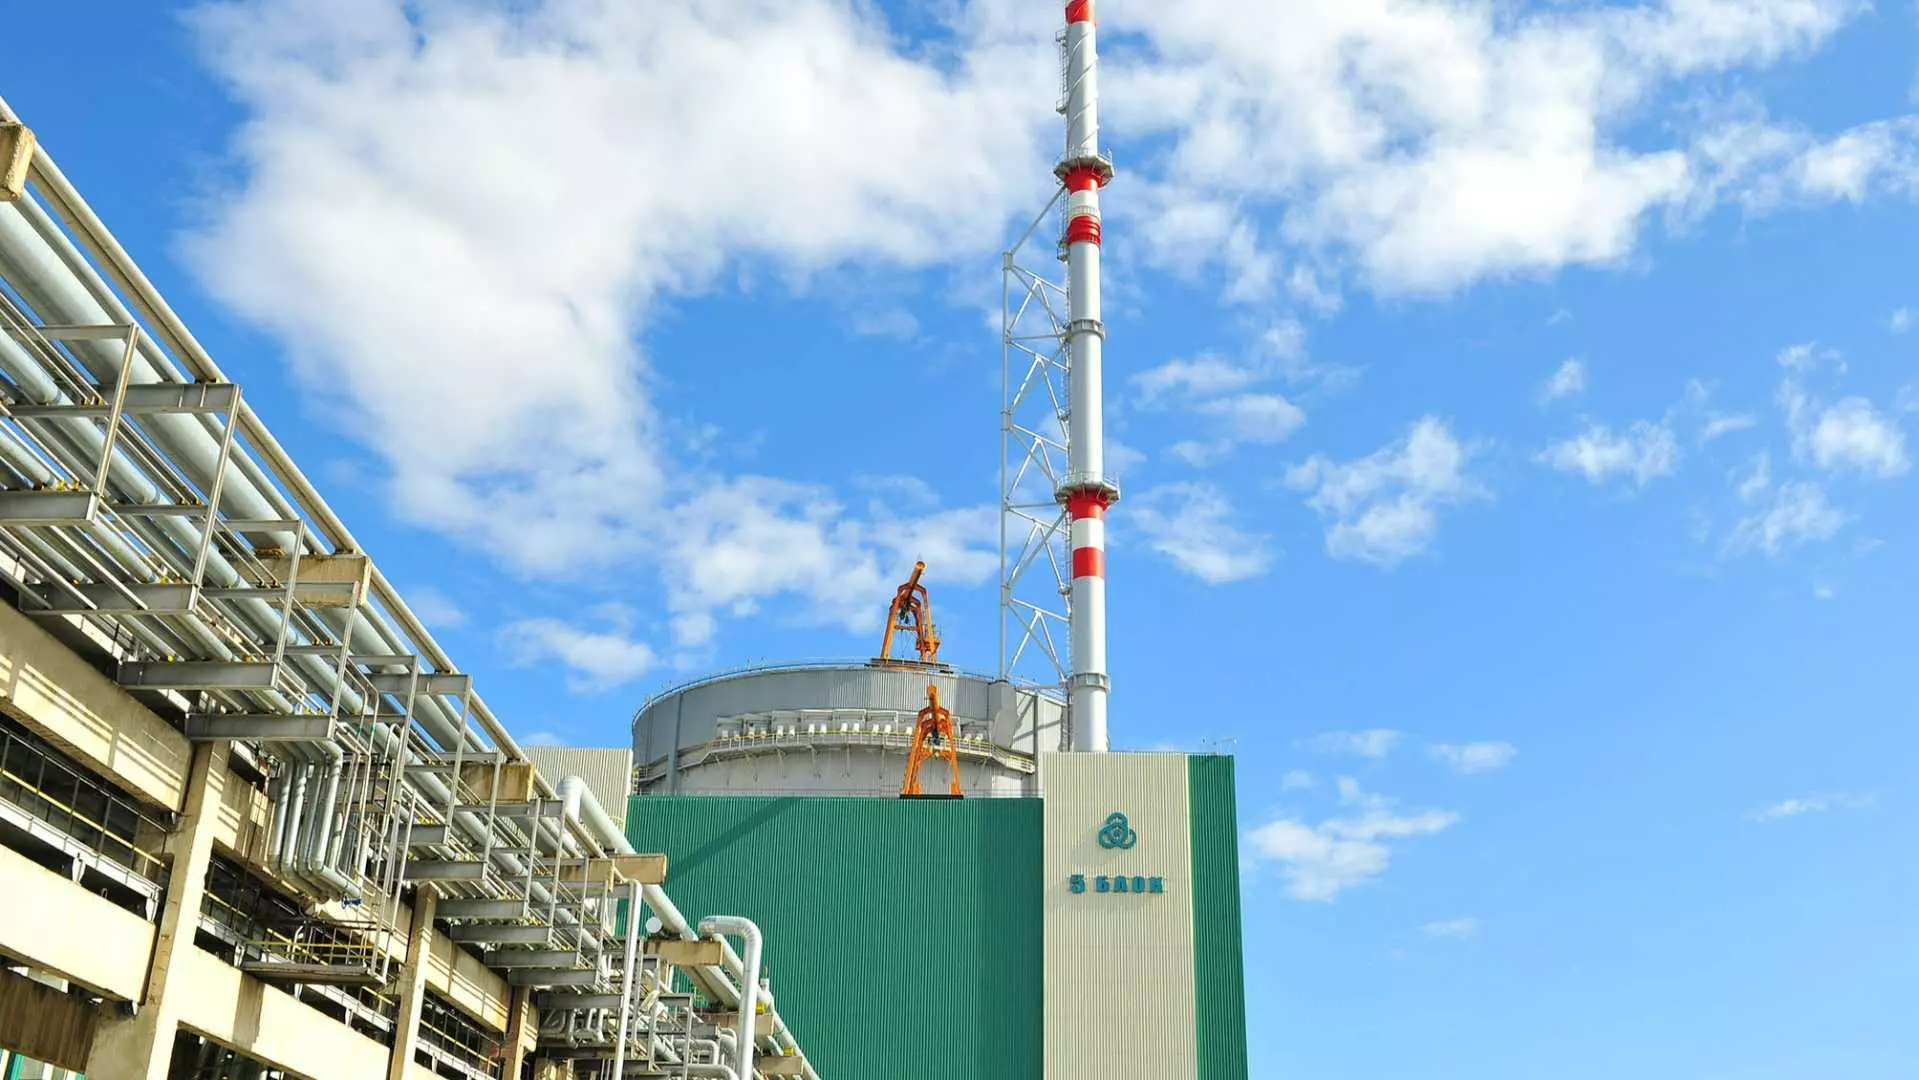 Свежото ядрено гориво от "Уестингхаус" е вече в АЕЦ "Козлодуй", кога започва зареждането? (СНИМКИ)